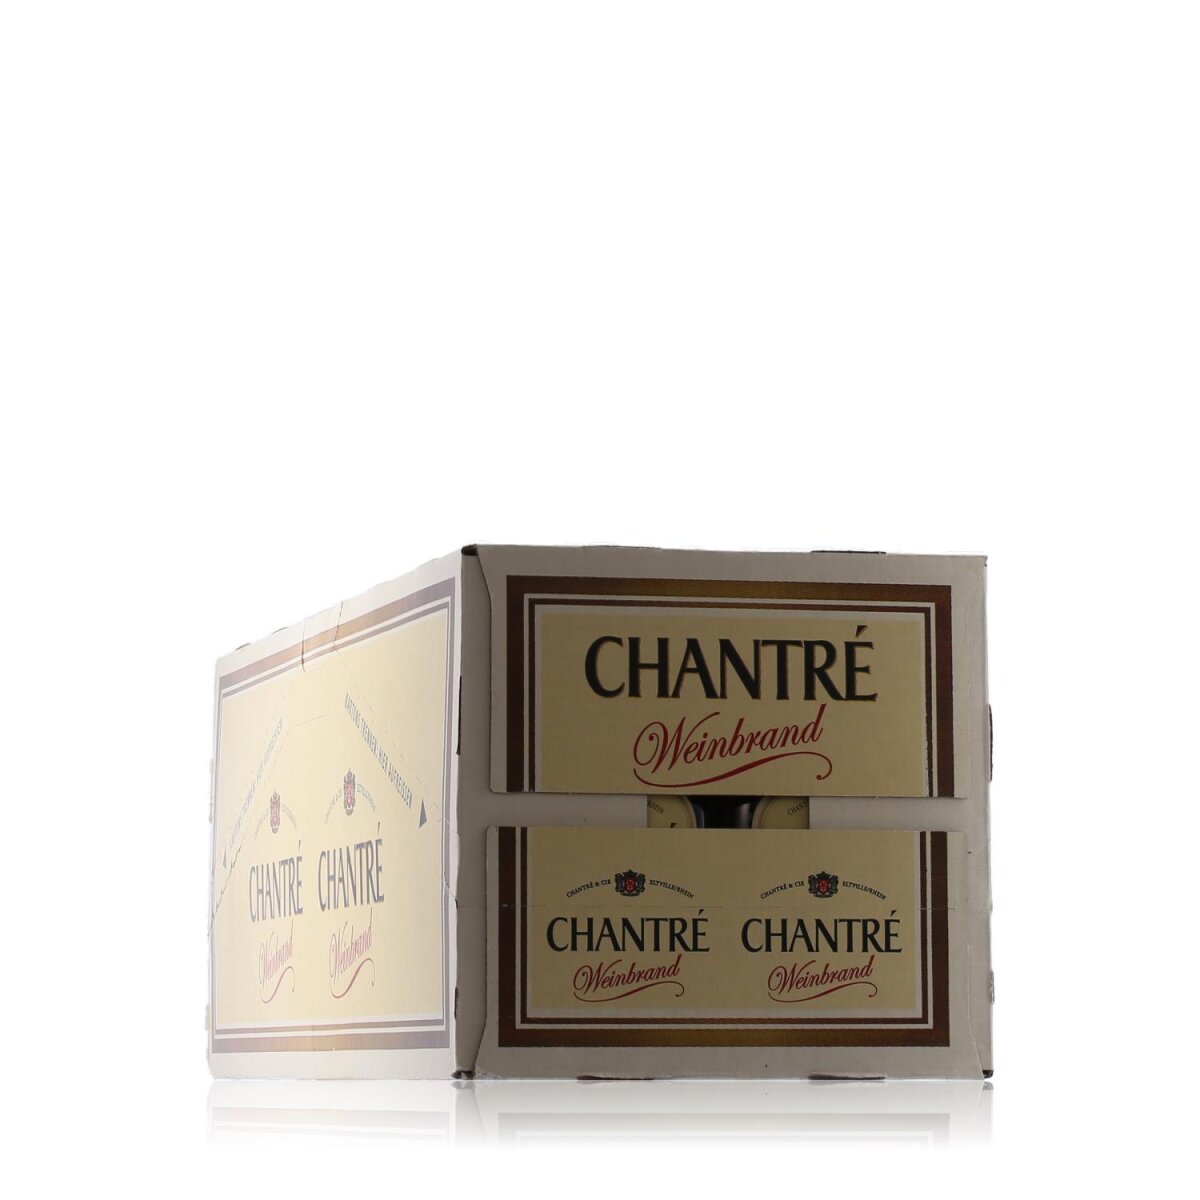 Chantré Weinbrand Miniaturen 36% 24x0,1l Vol